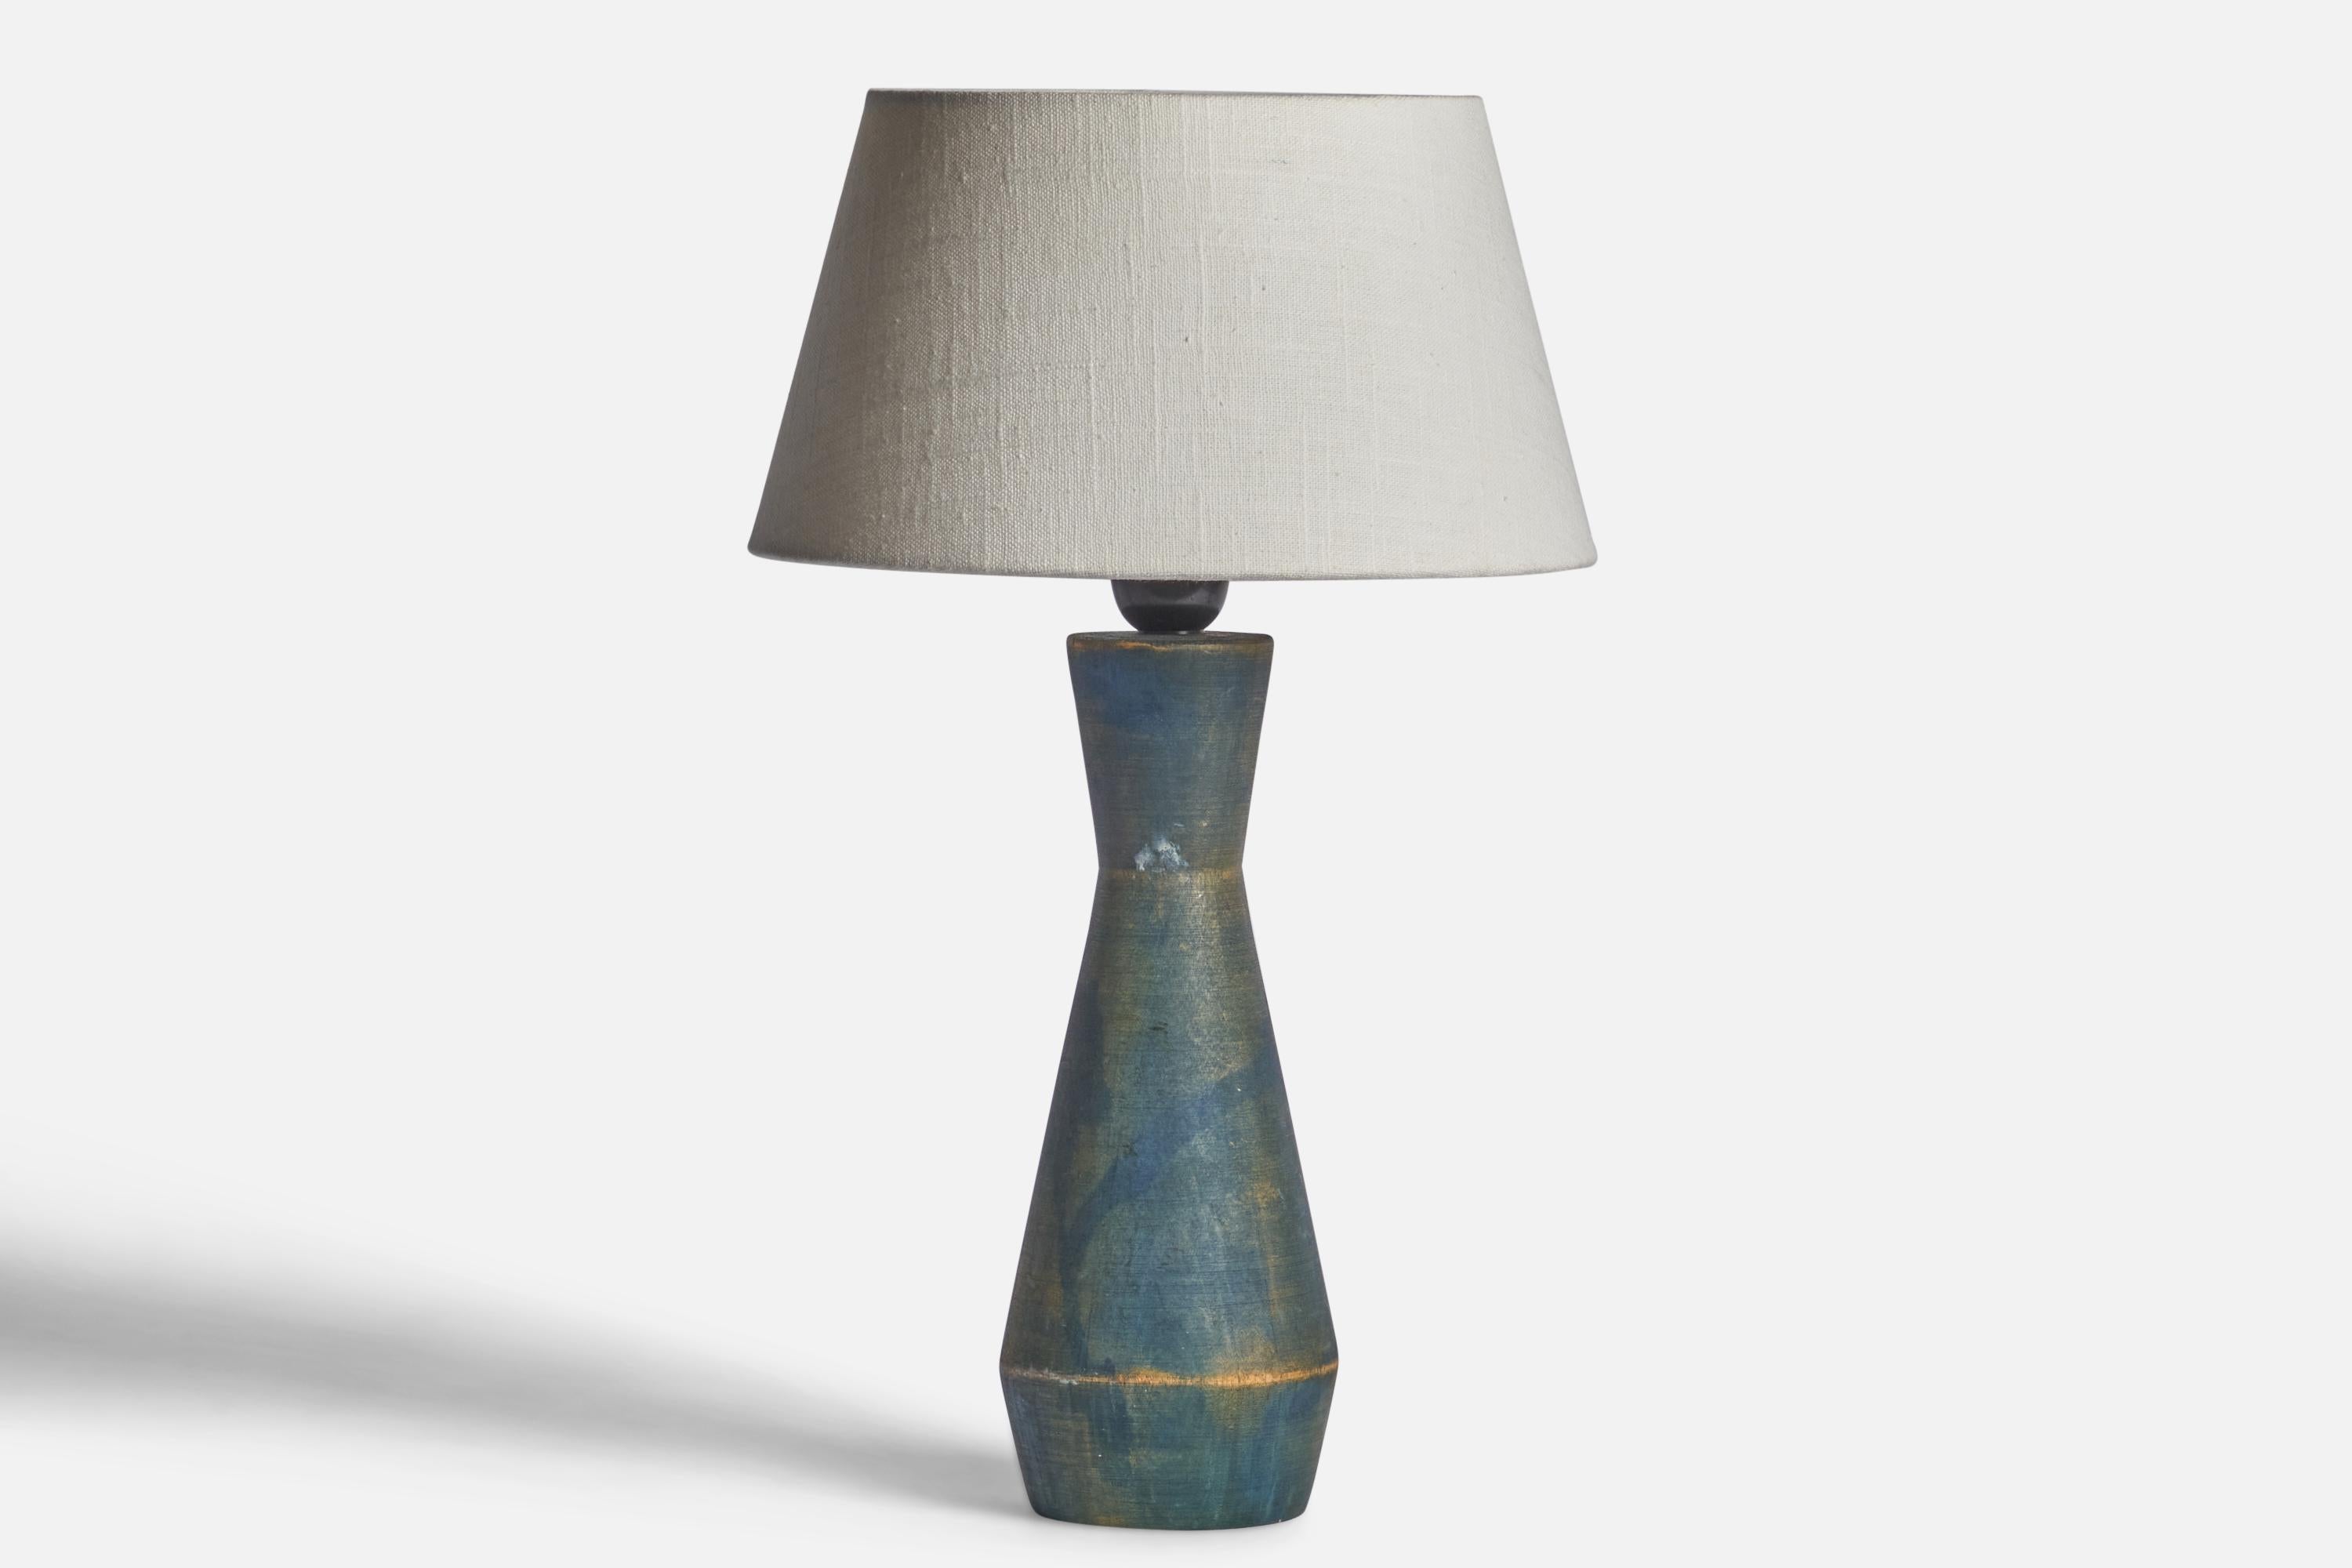 Lampe de table en bois peint en bleu, conçue et produite en Suède, années 1970. 

Dimensions de la lampe (pouces) : 13.35